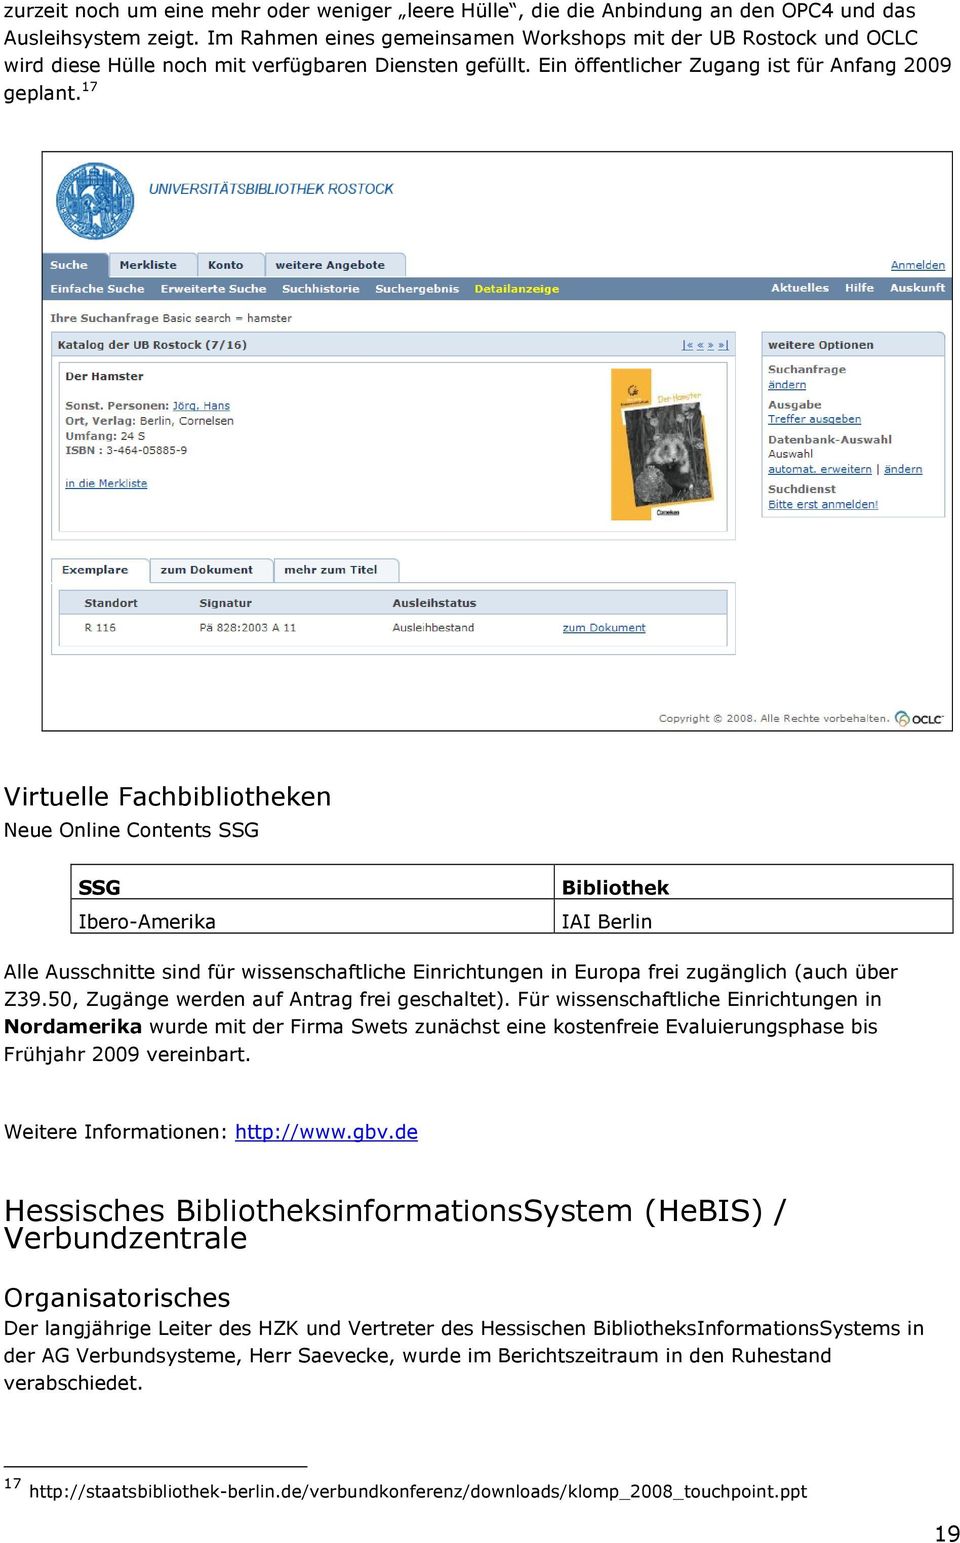 17 Virtuelle Fachbibliotheken Neue Online Contents SSG SSG Ibero-Amerika Bibliothek IAI Berlin Alle Ausschnitte sind für wissenschaftliche Einrichtungen in Europa frei zugänglich (auch über Z39.